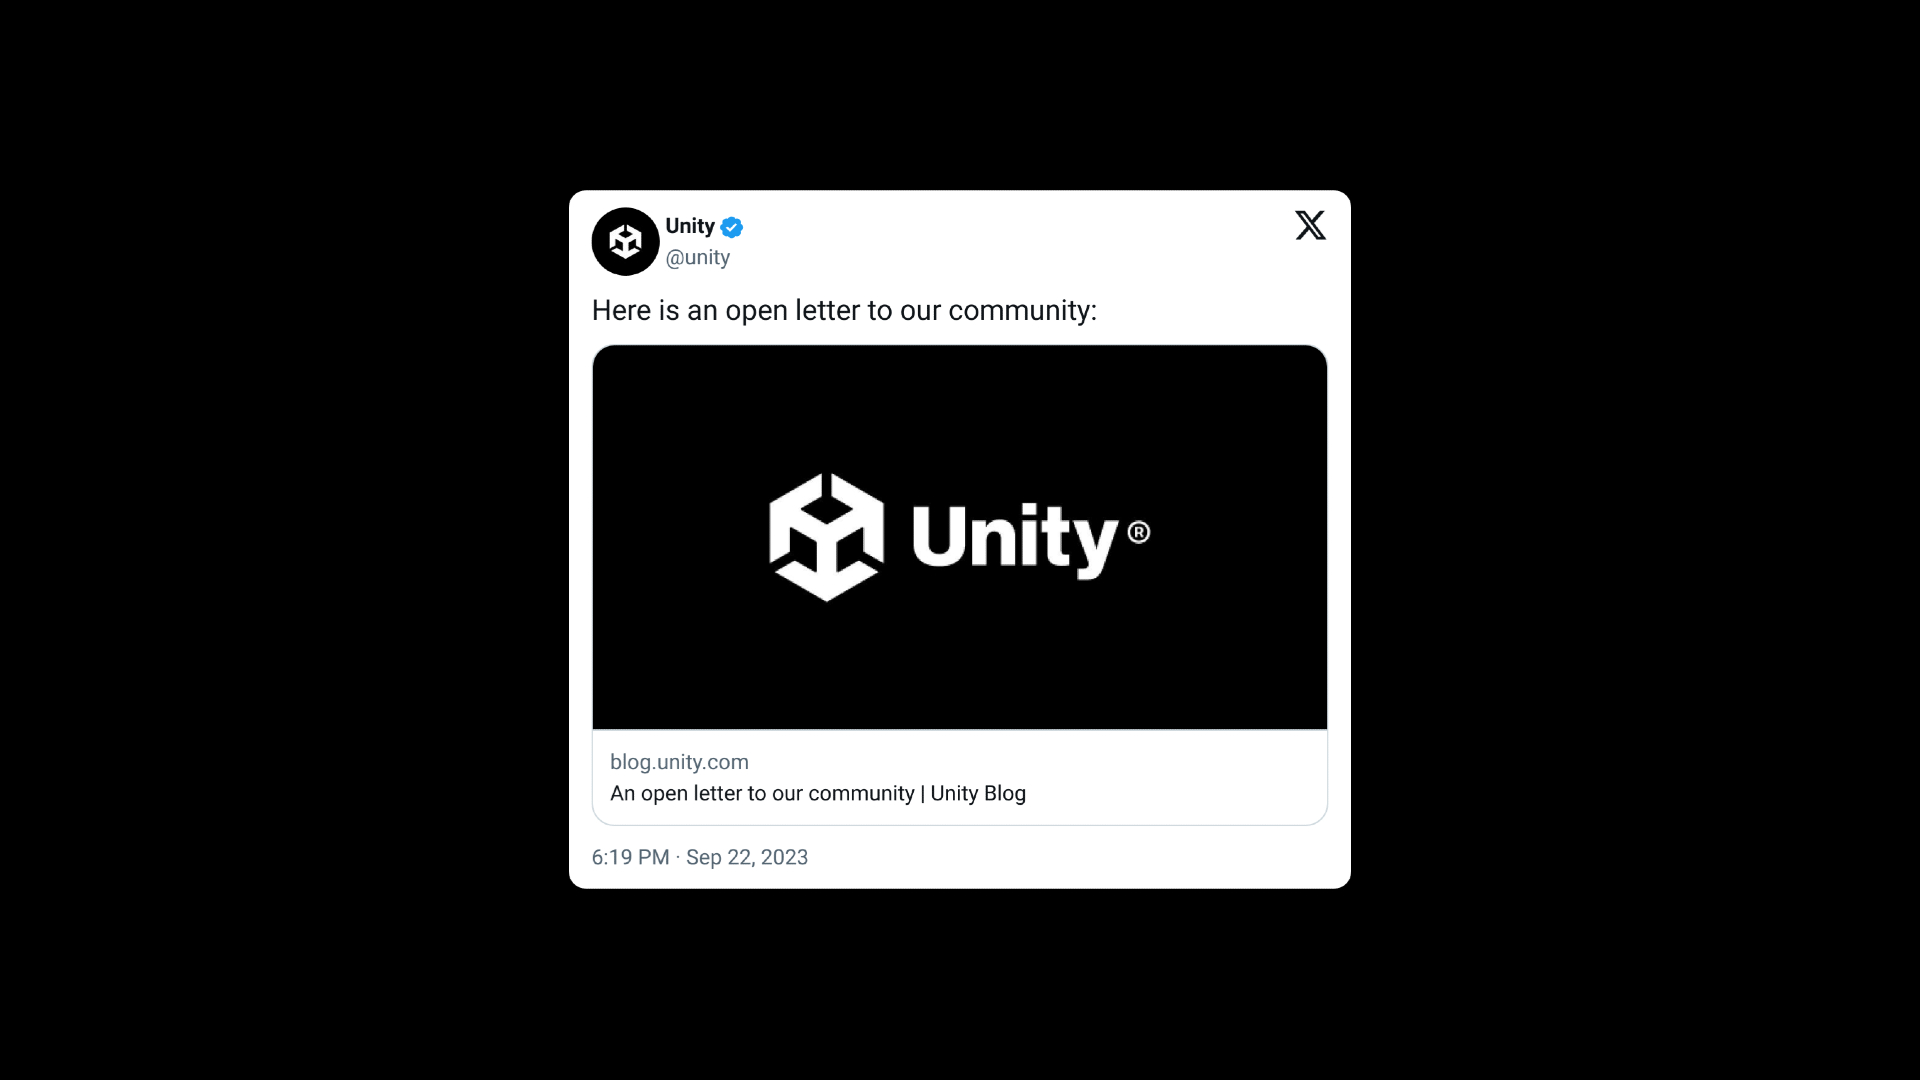 Update-Beitrag von Unity auf Twitter, in dem die Änderungen an der umstrittenen Gebührenrichtlinie detailliert beschrieben werden